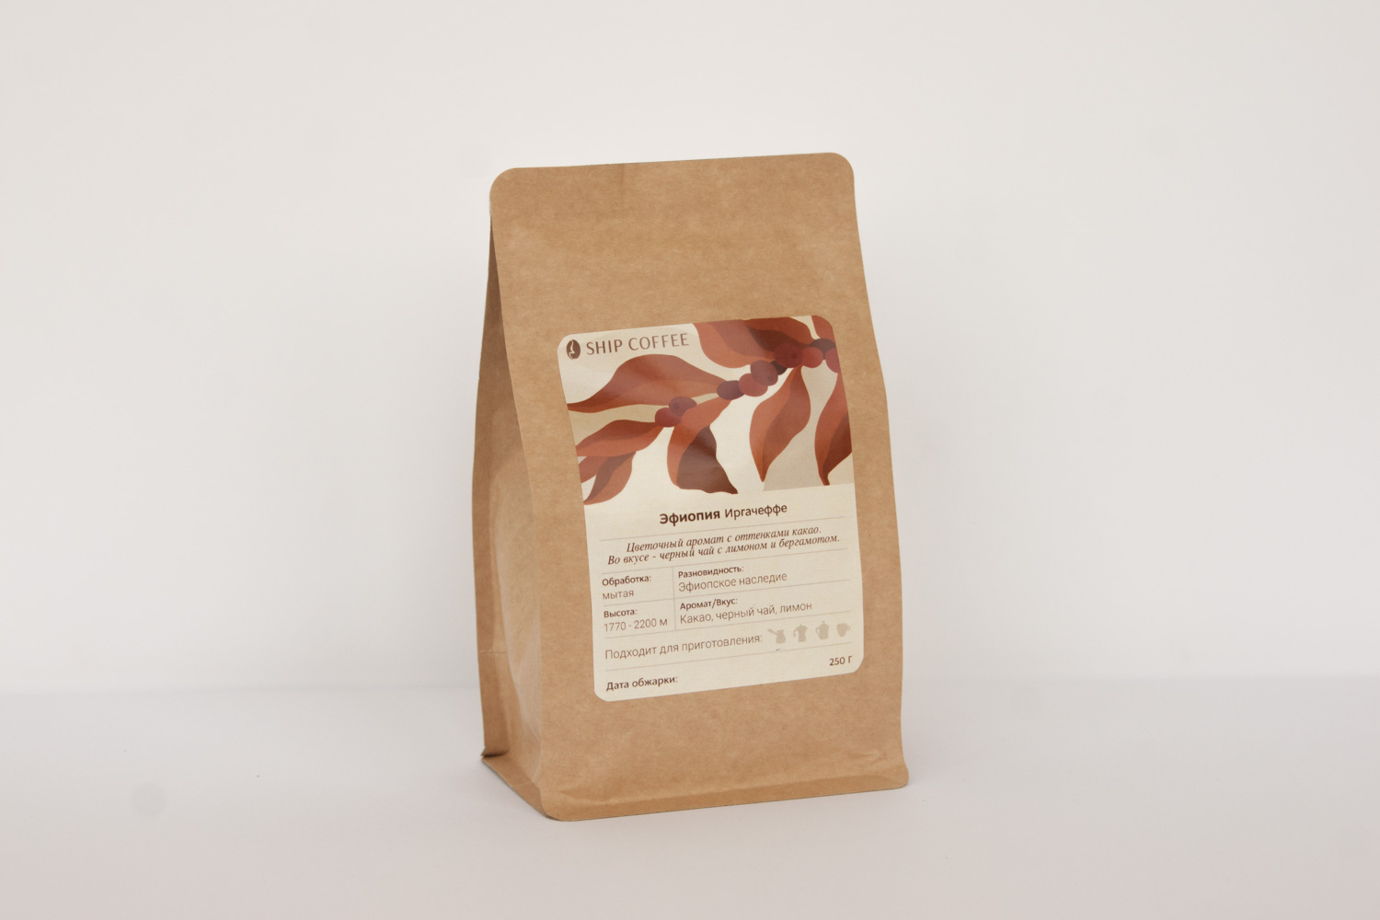 Свежеобжаренный кофе Эфиопия Иргачеффе. Легкий цветочный аромат с оттенками какао. 250г. 100% арабика